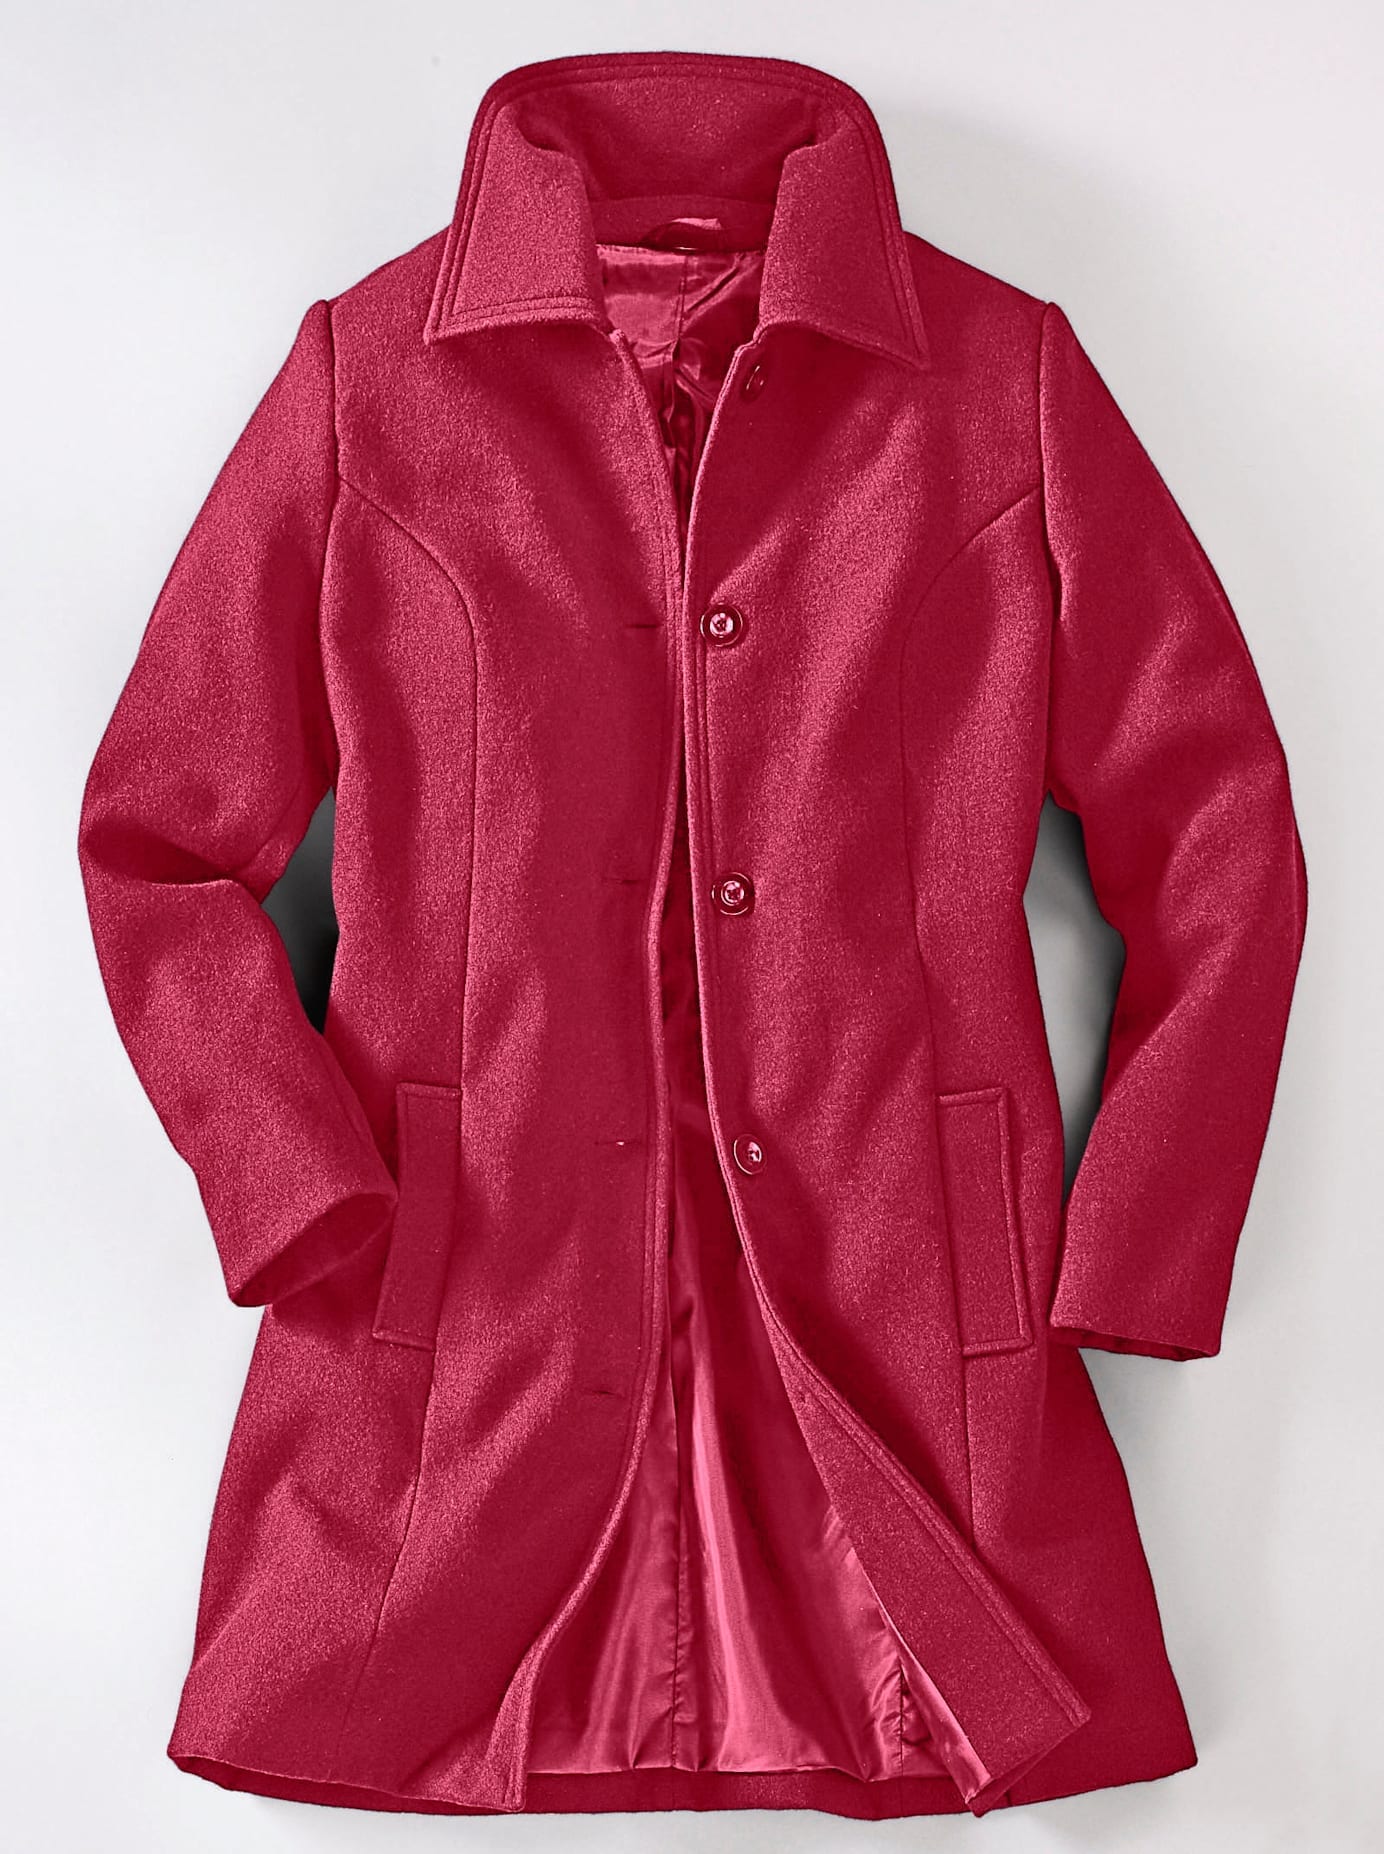 Roter Mantel kaufen im OTTO Onlineshop